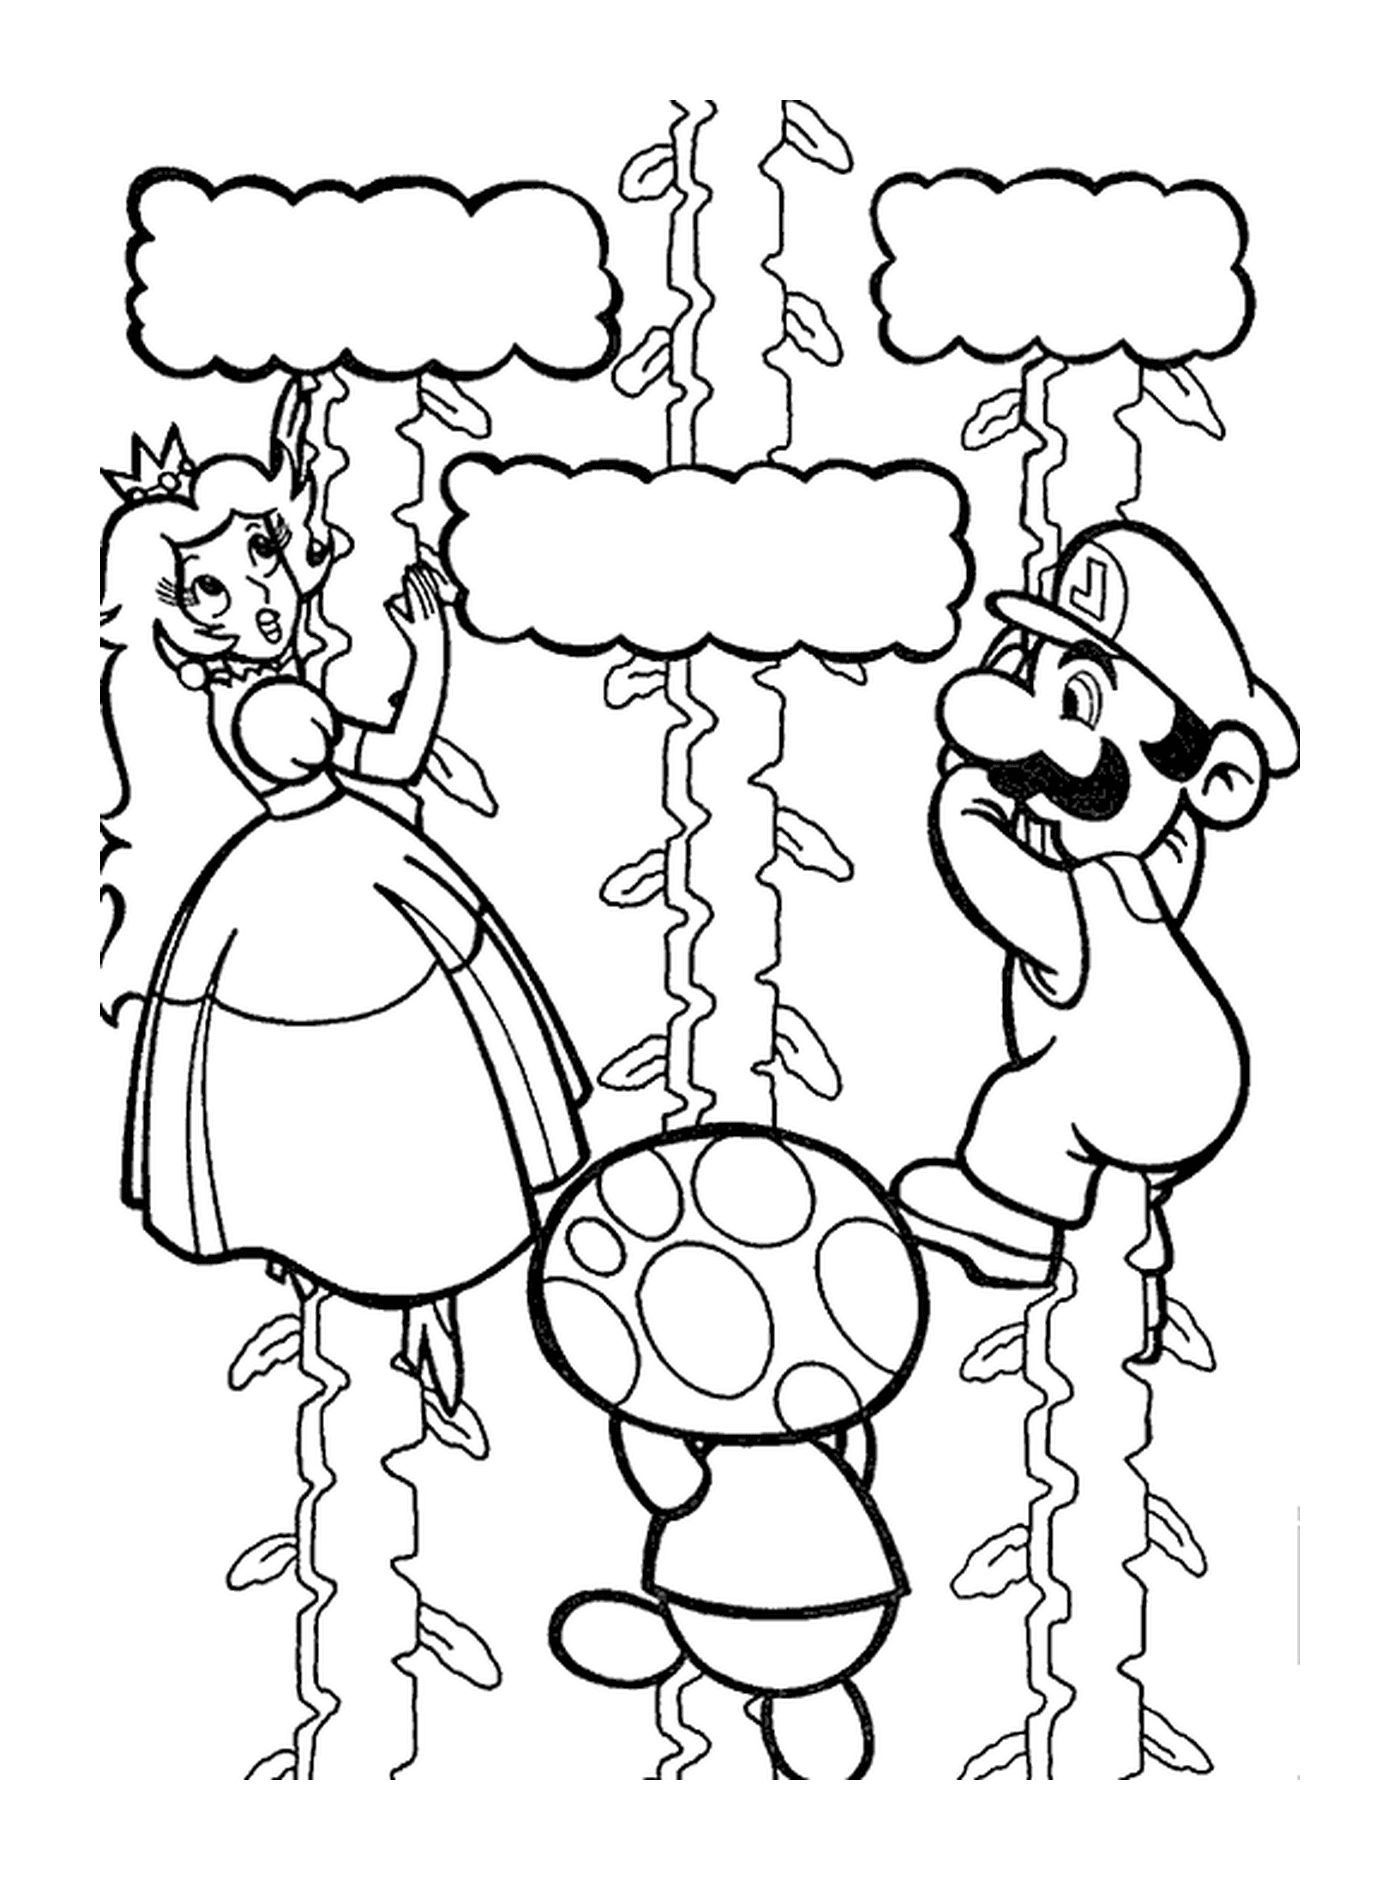  Марио, персик и жаба поднимаются к небу 